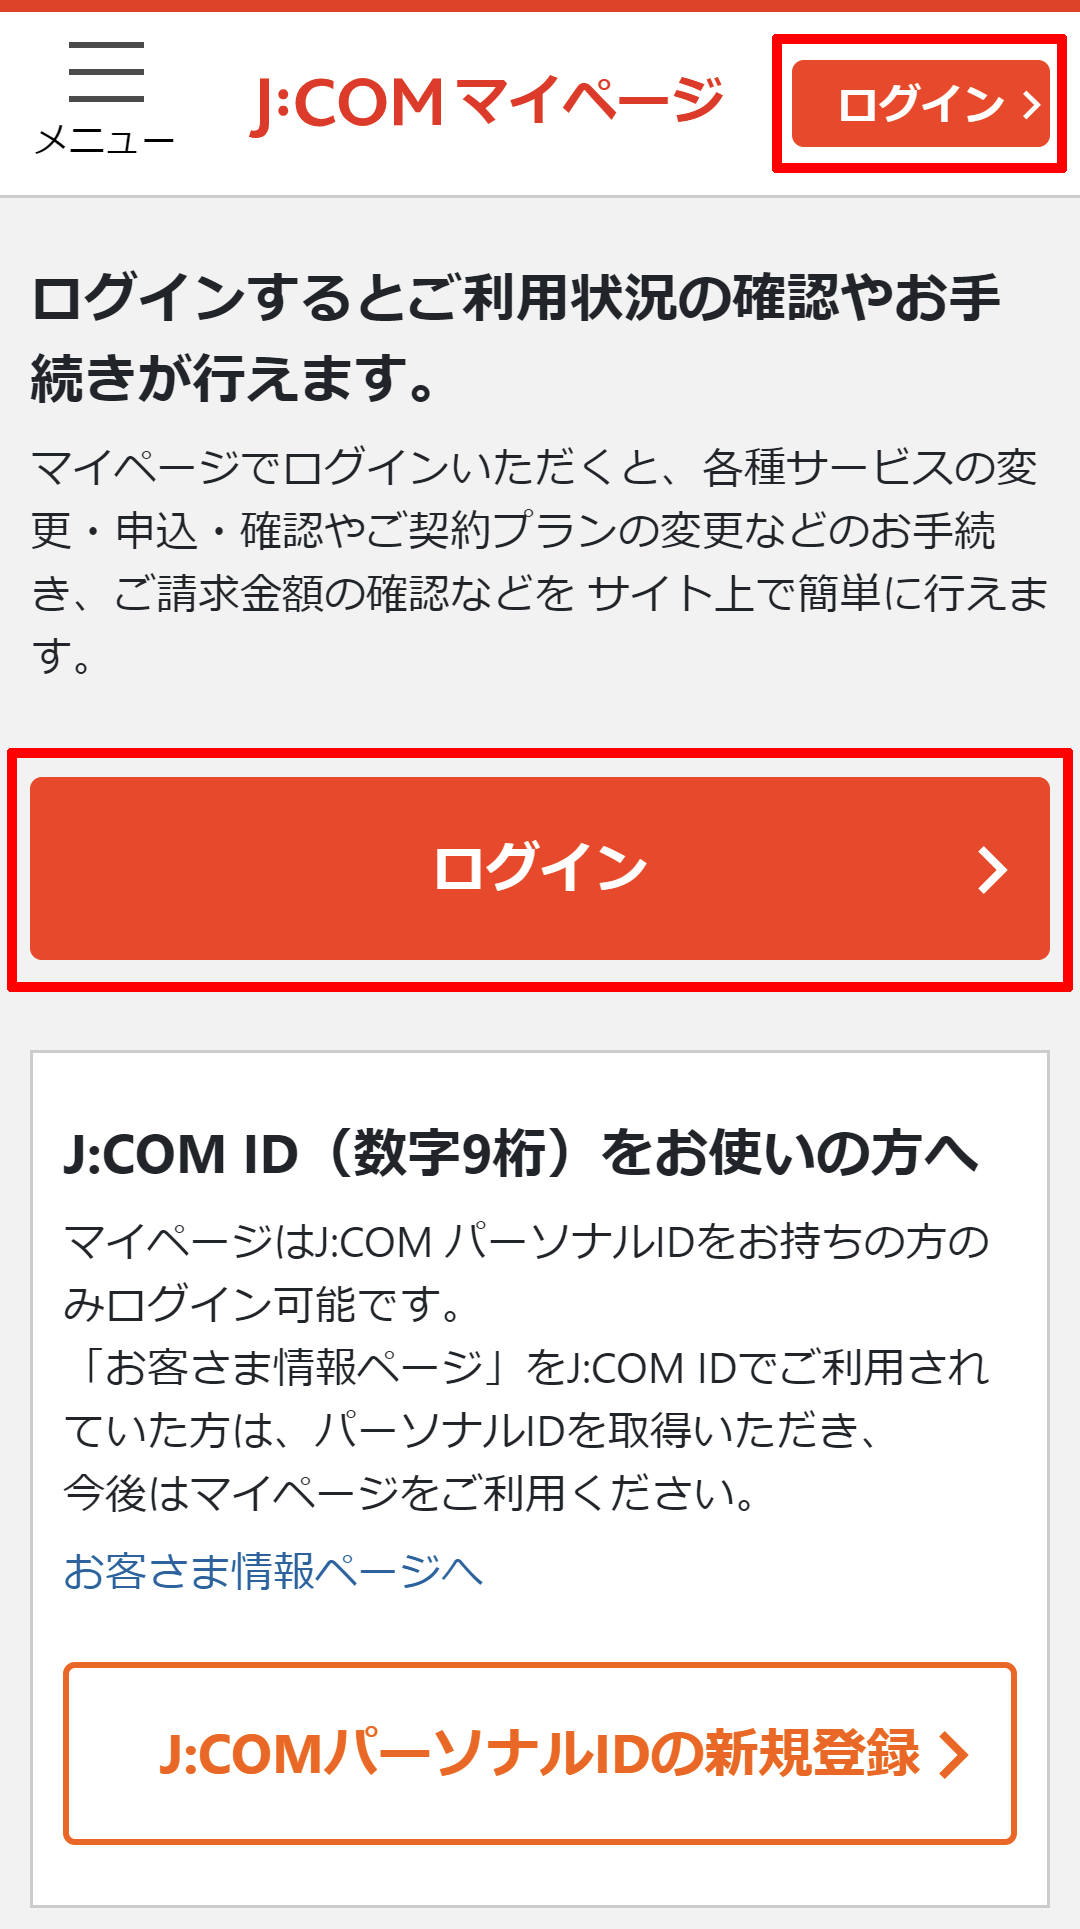 マイページ｜ご請求内容の確認手順を知りたい | JCOMサポート